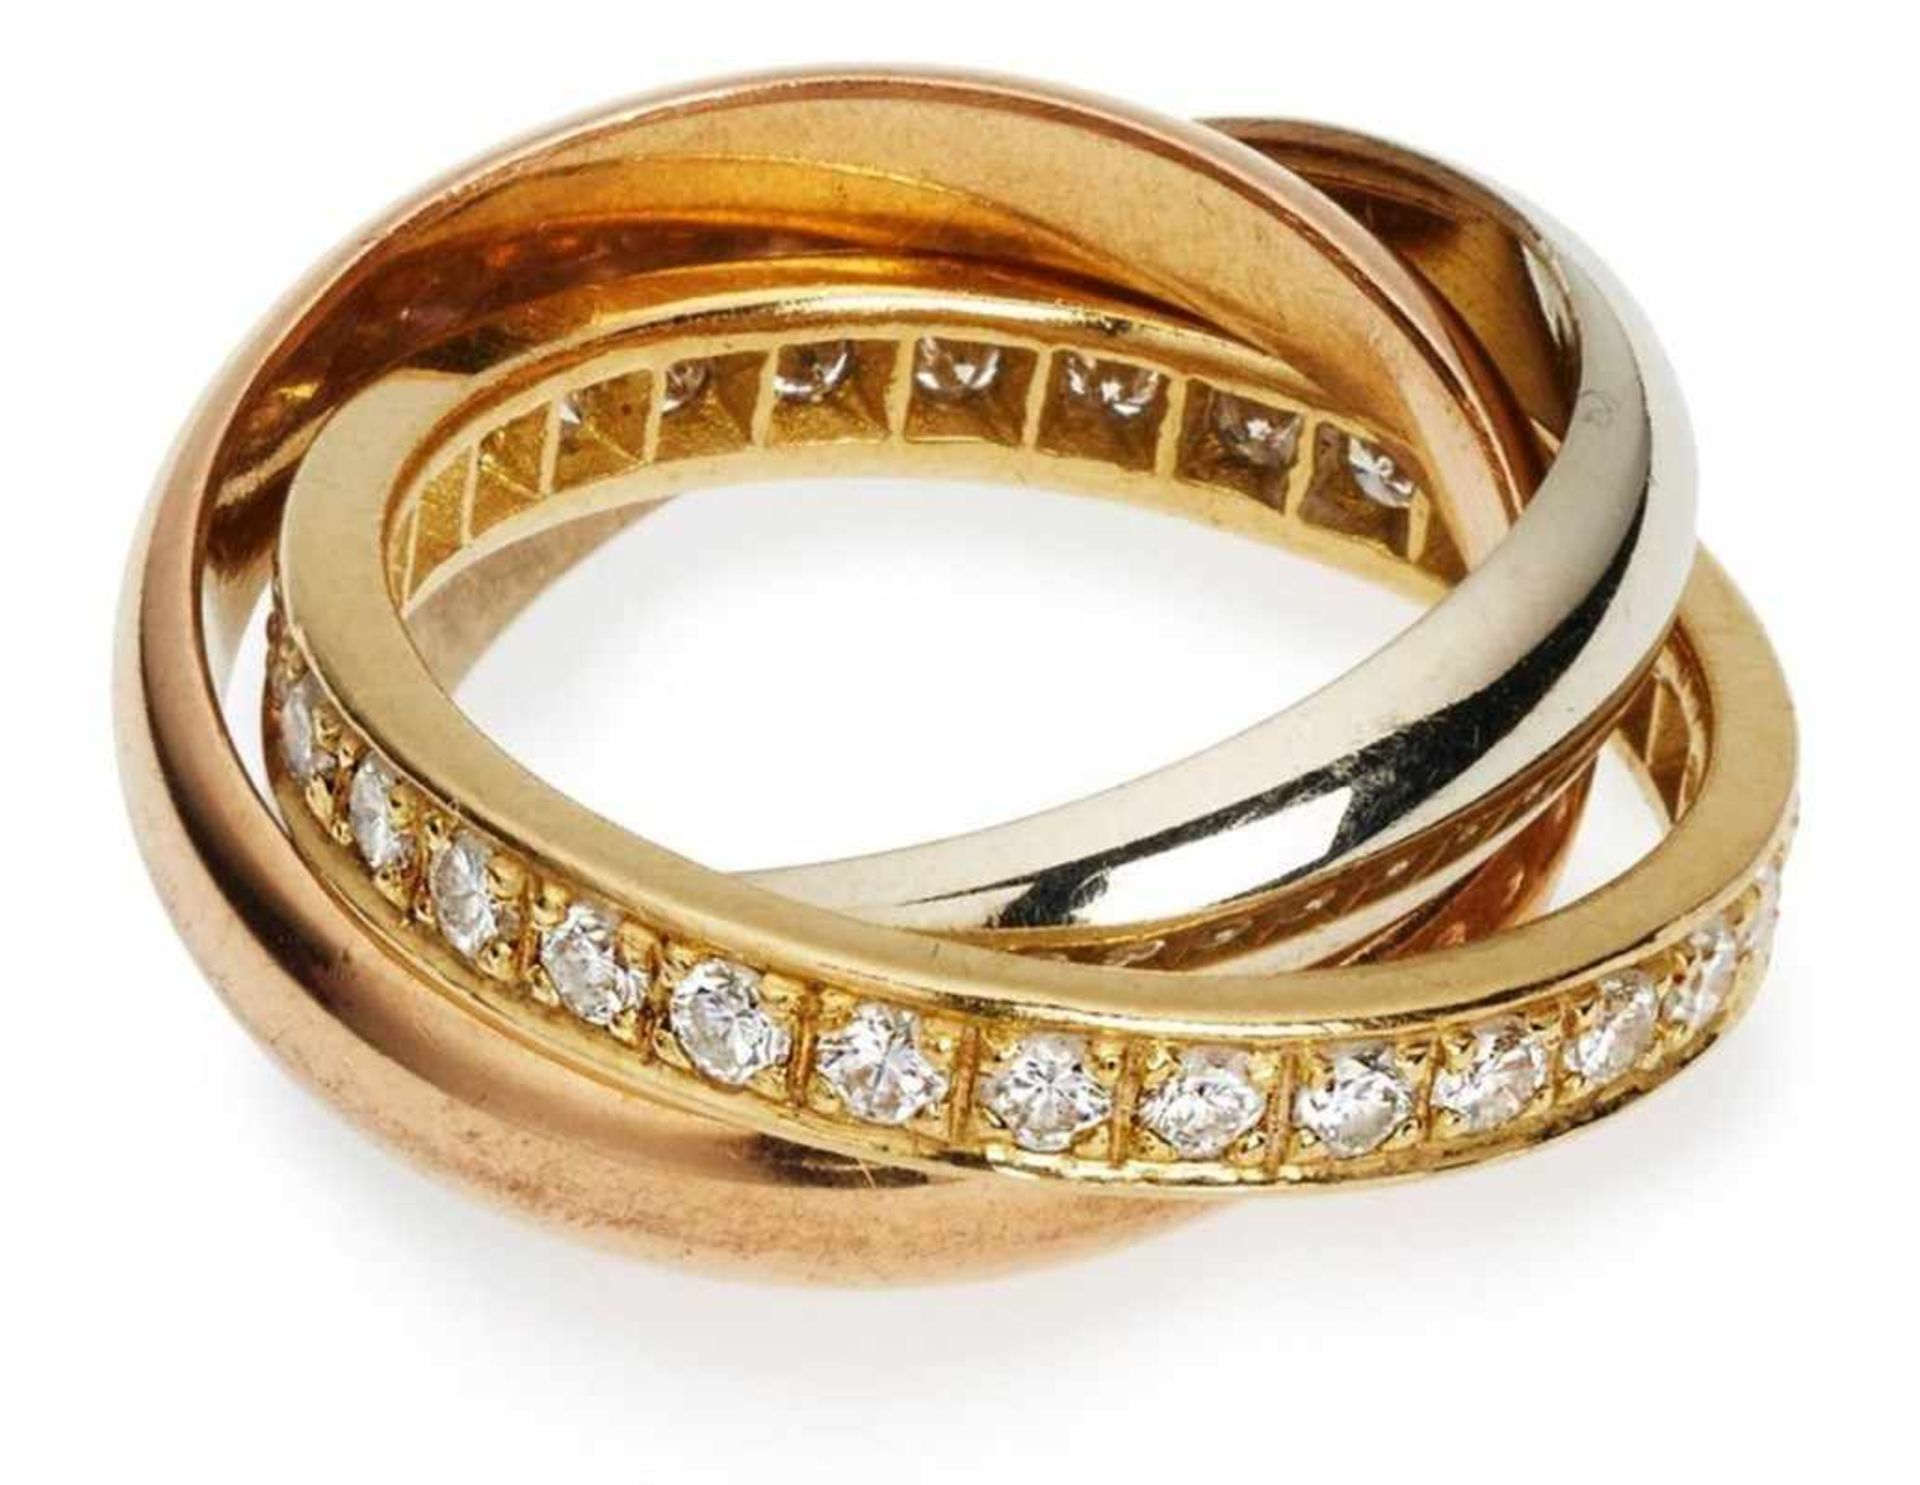 Trinity-Ring im Cartier-Stil.18 kt GG/WG und 14 kt. RG, der gelbgoldene besetzt mit ca. 28